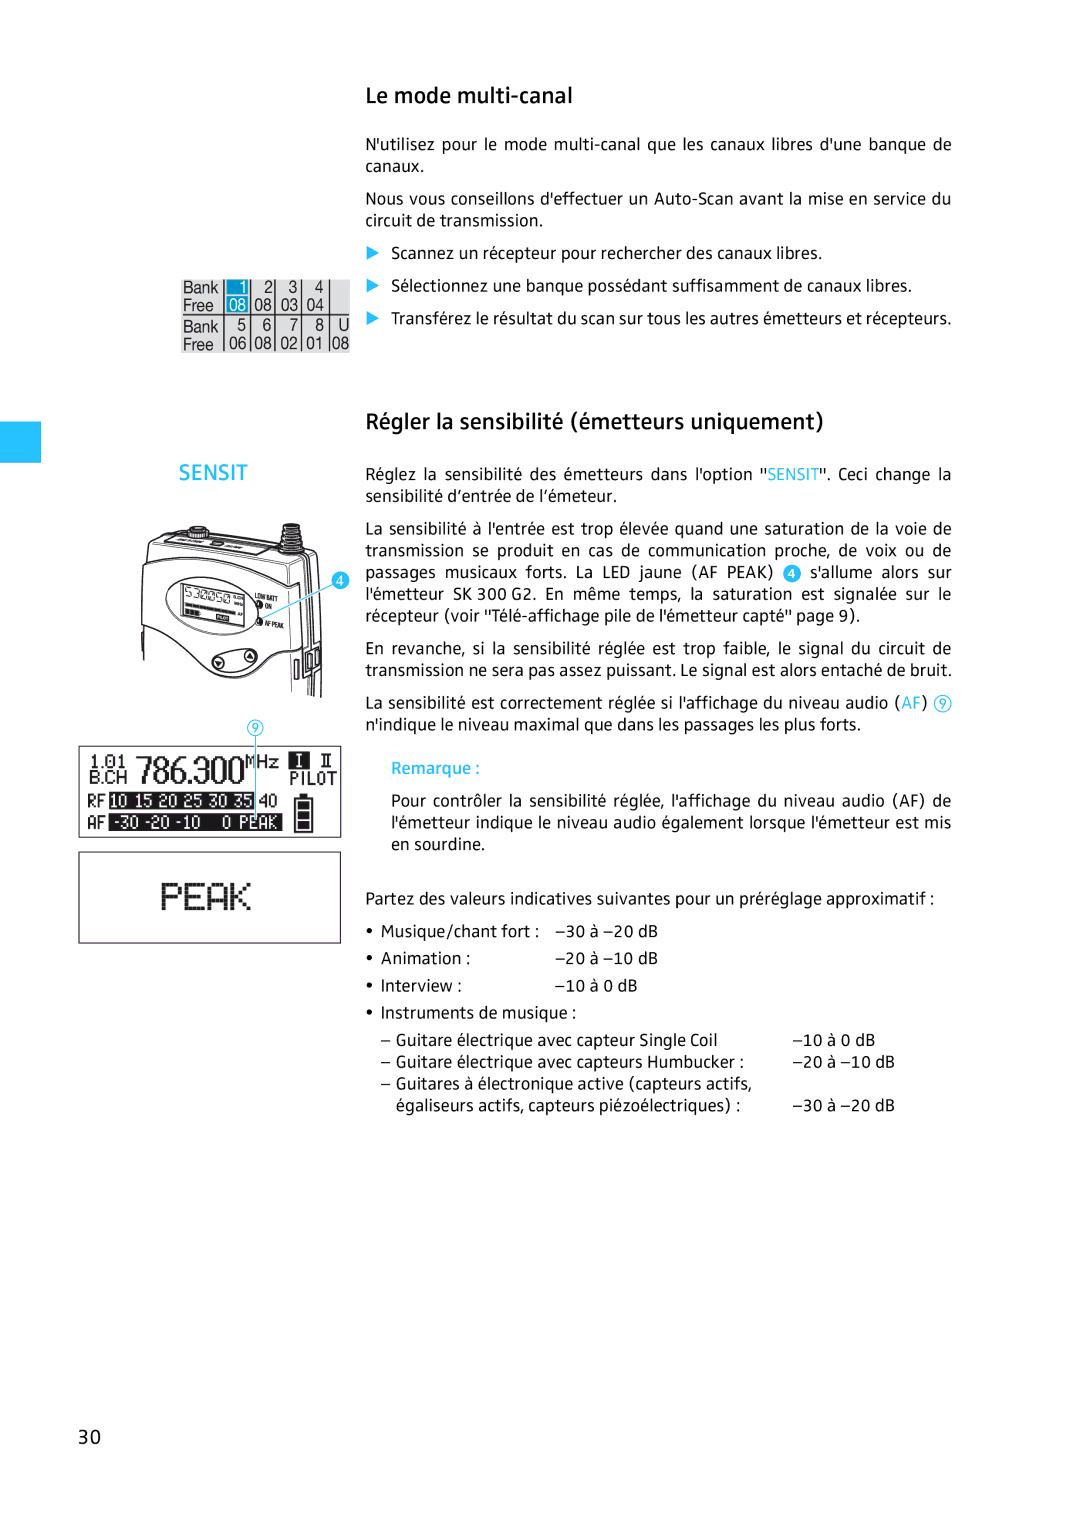 Sennheiser EW 300 G2 manual Le mode multi-canal, Régler la sensibilité émetteurs uniquement 